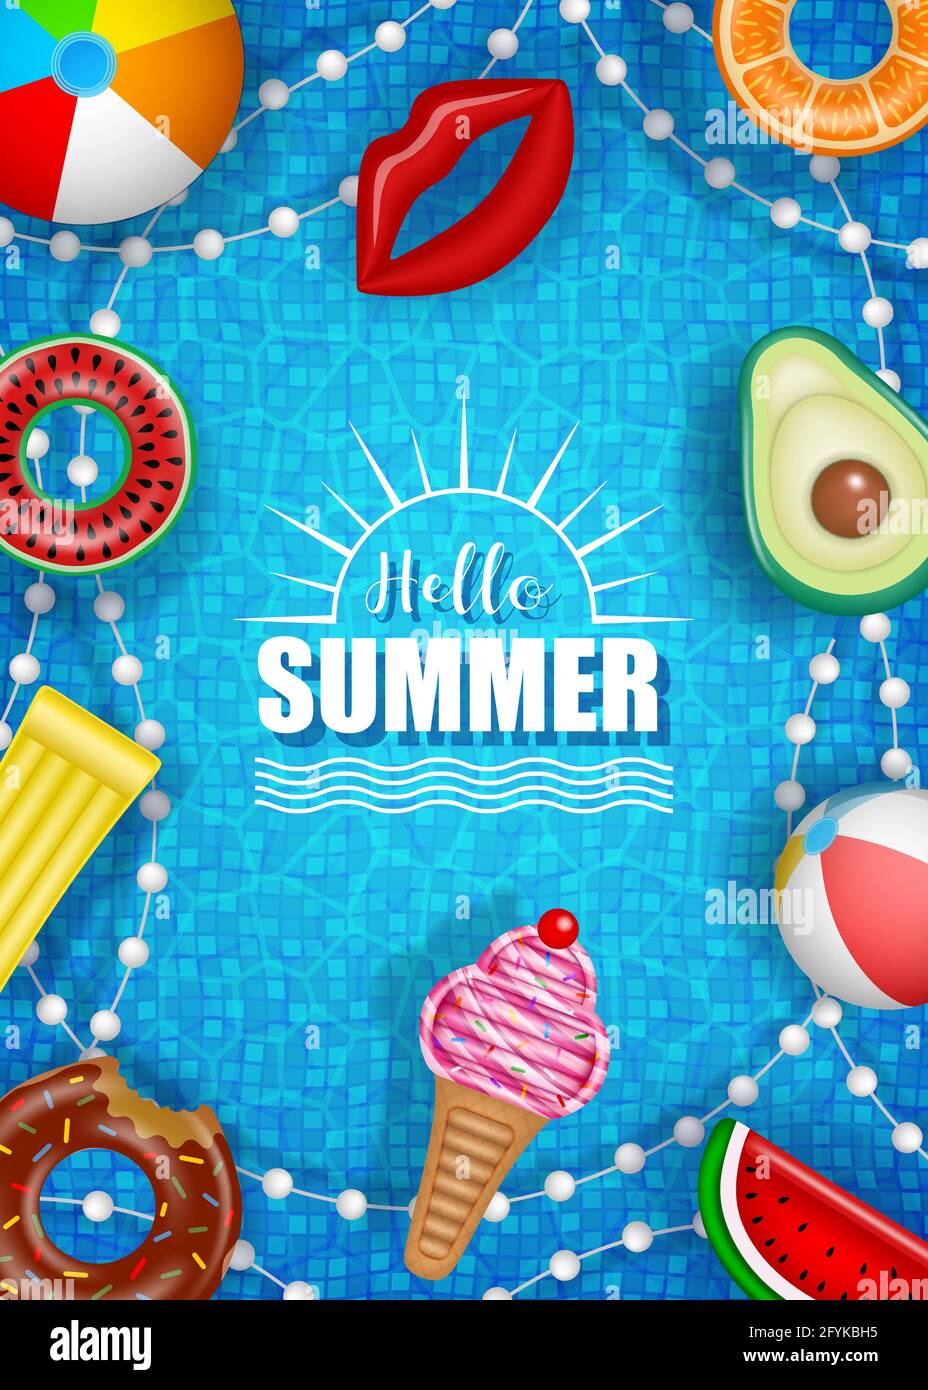 Hallo Sommer Poster mit bunten aufblasbaren Kugeln, Matratzen und Ringen auf Pool Wasser Hintergrund Stock Vektor